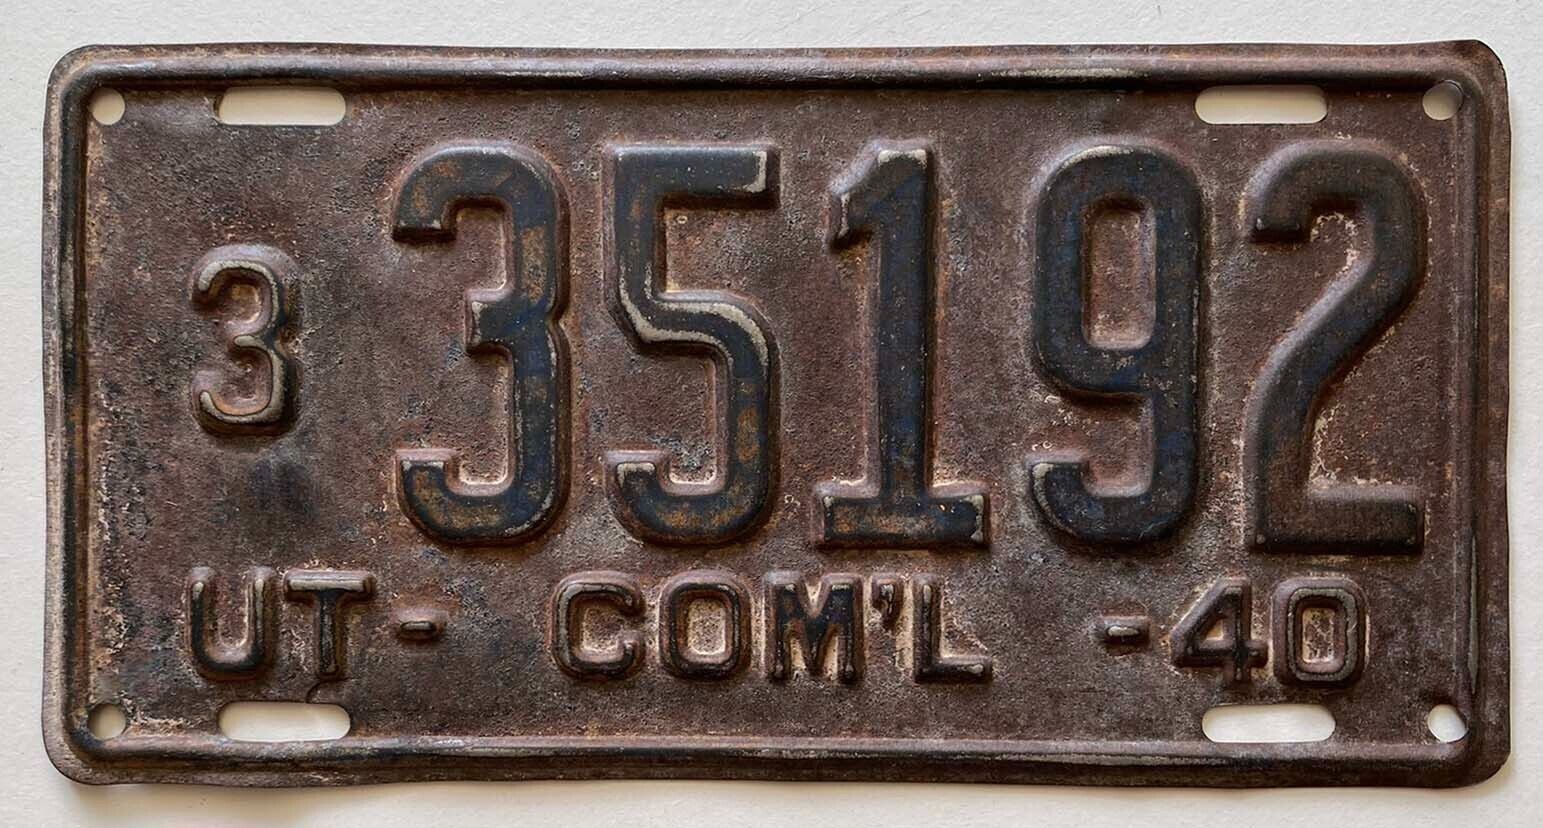 Utah 1940 Commercial Truck License Plate 3 35192